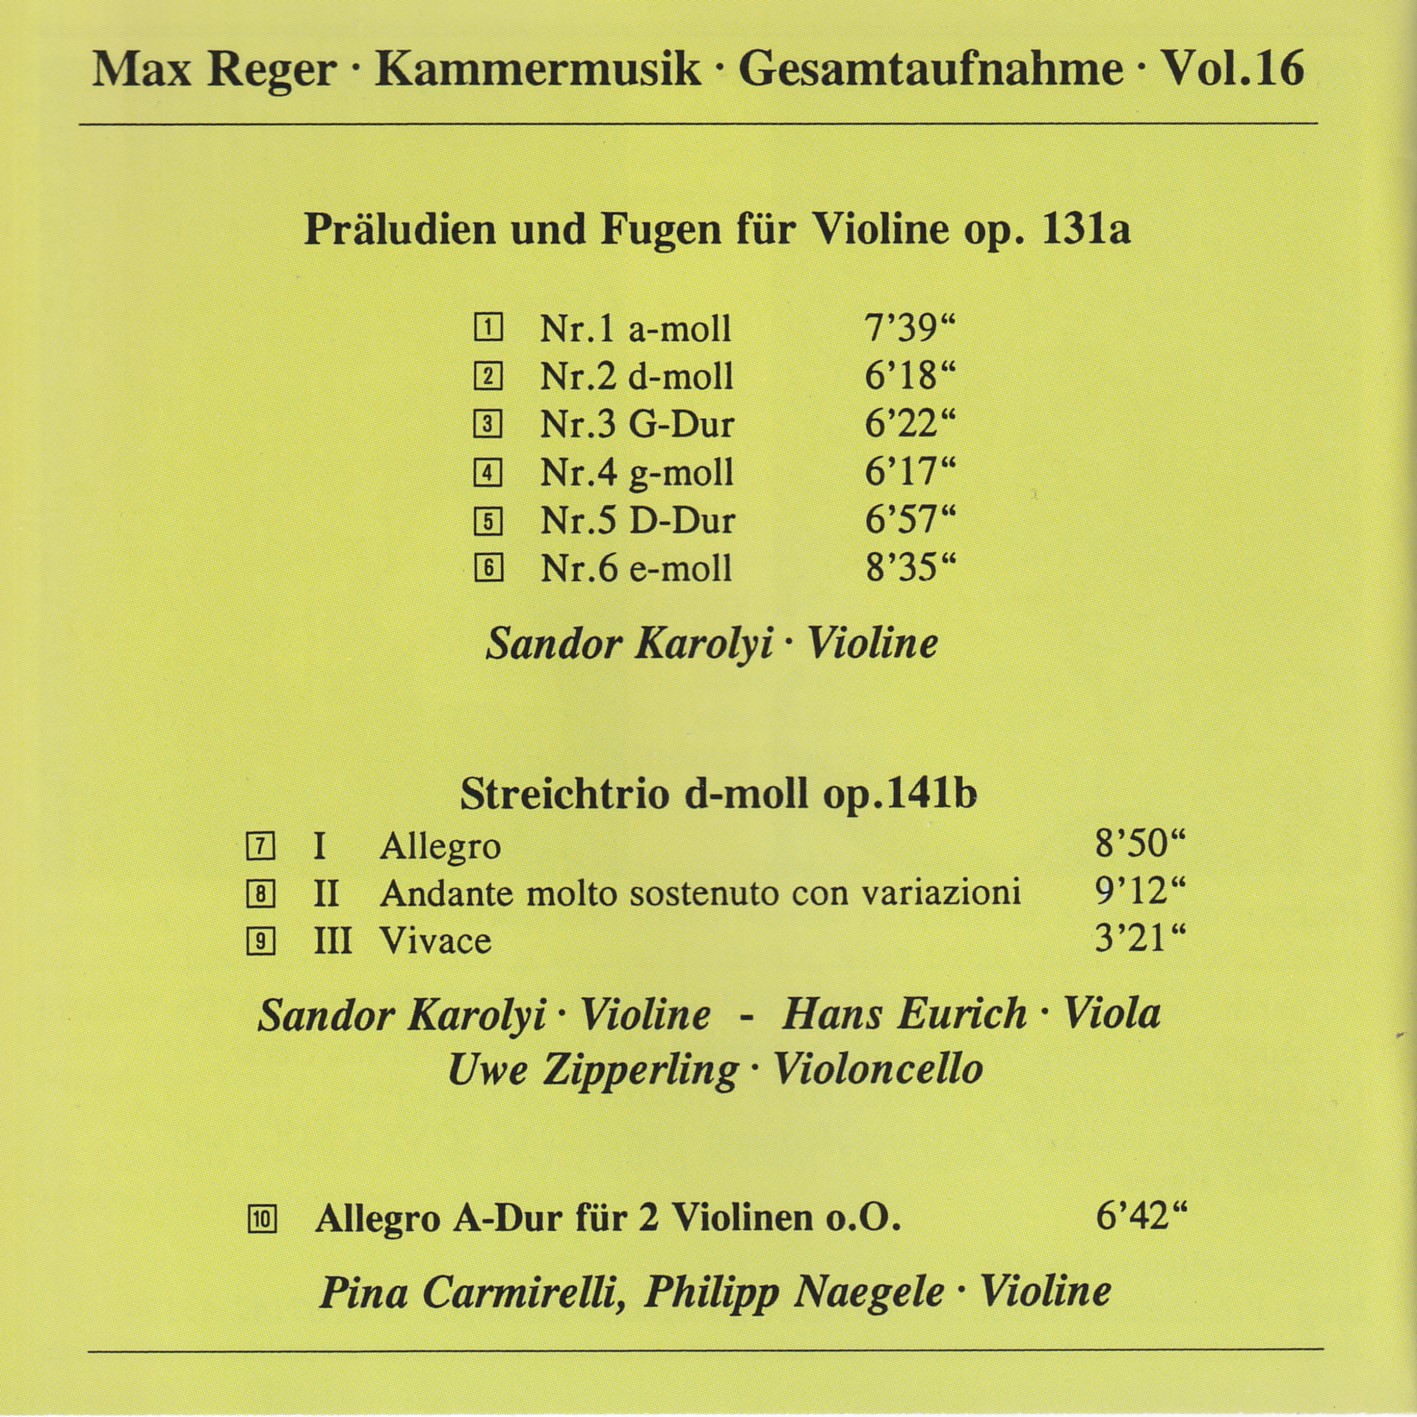 Max Reger - Kammermusik komplett Vol. 16